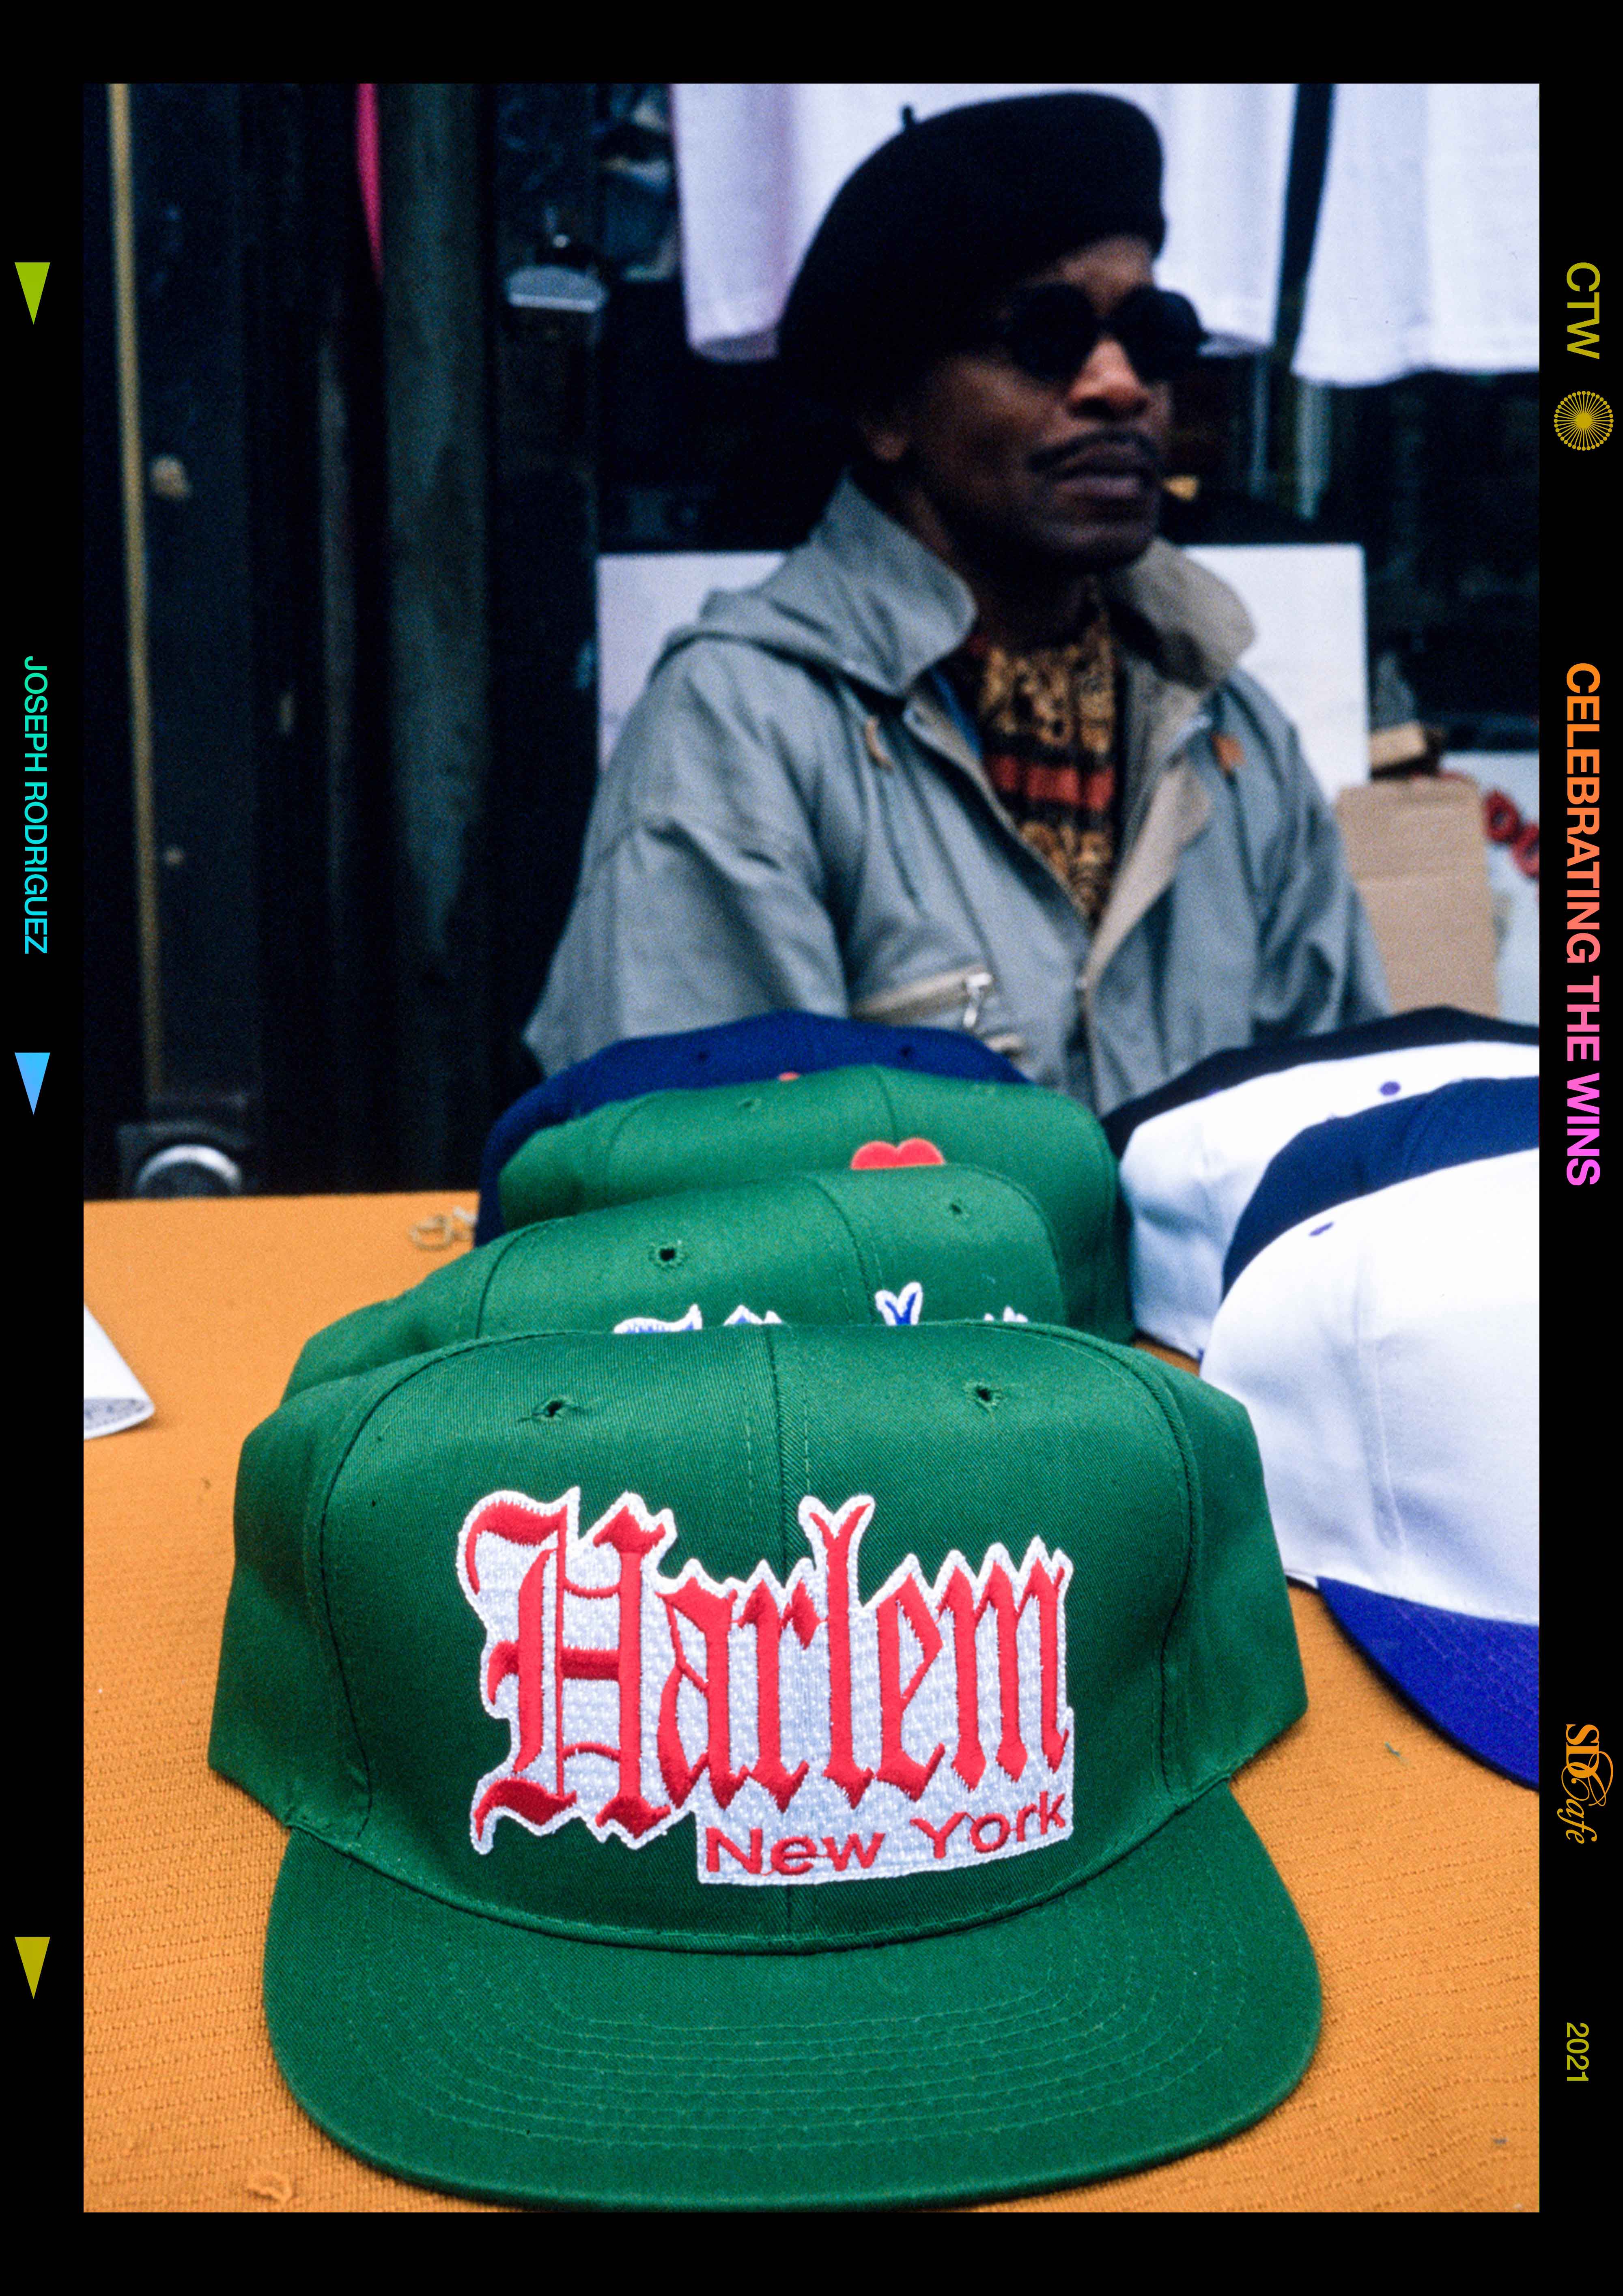 Harlem '96 - 012